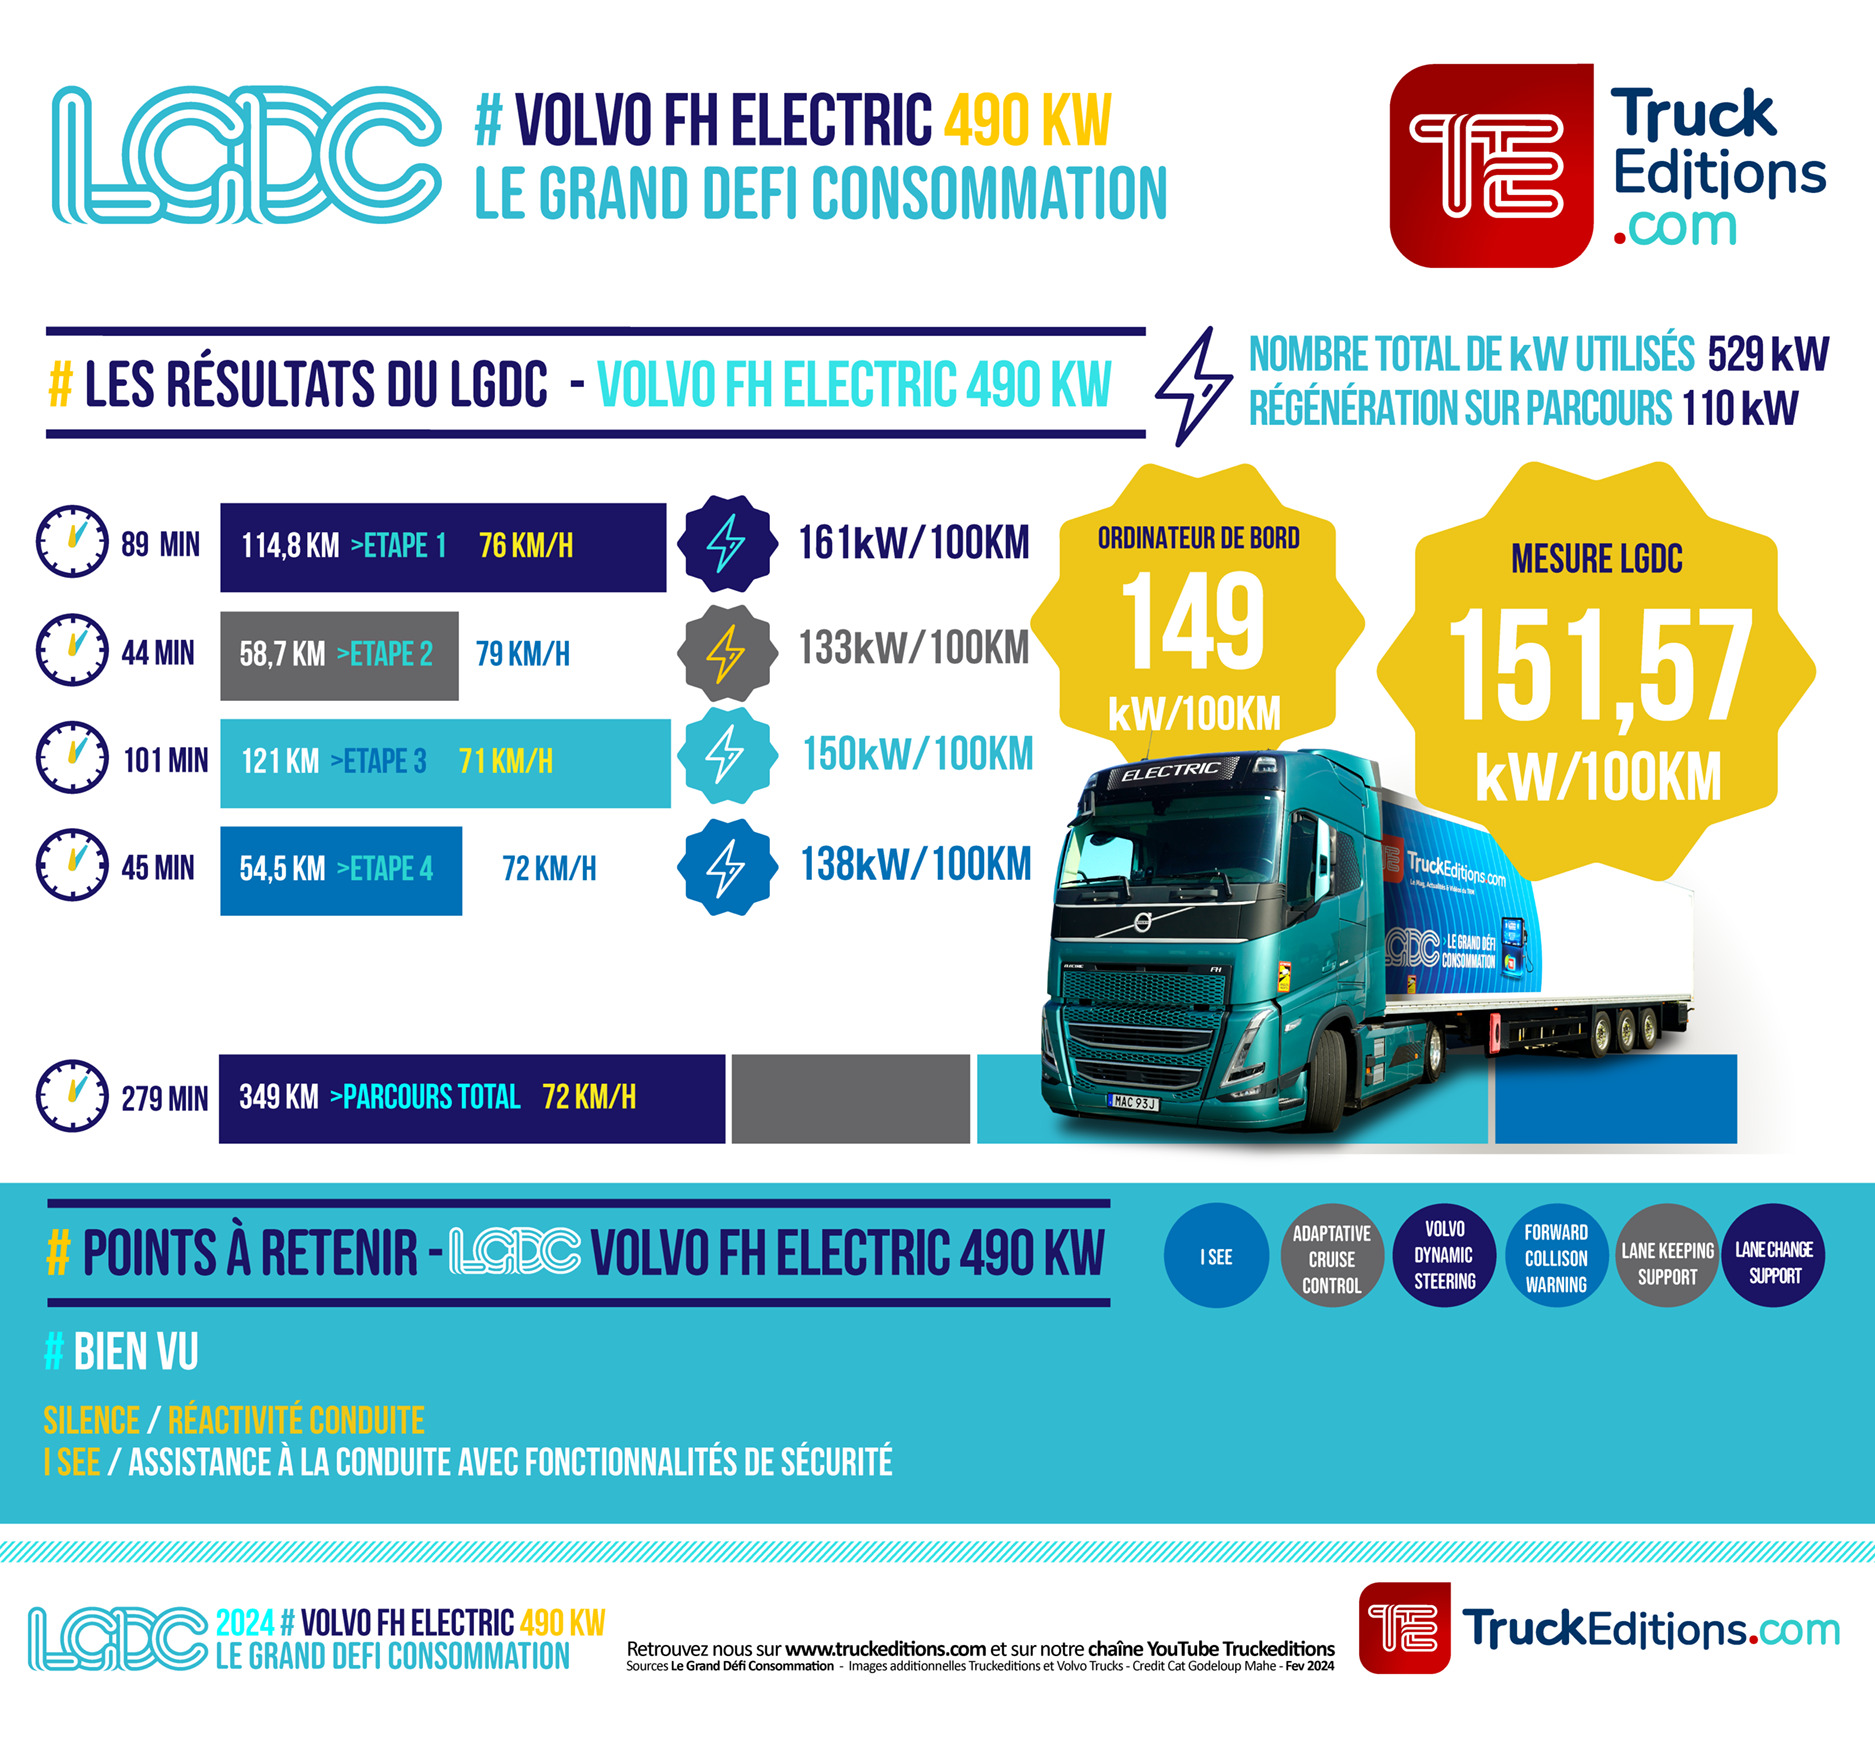 Les résultats du test consommation Truckeditions : Volvo FH Electric 490 kW dans le Grand Défi Consommation